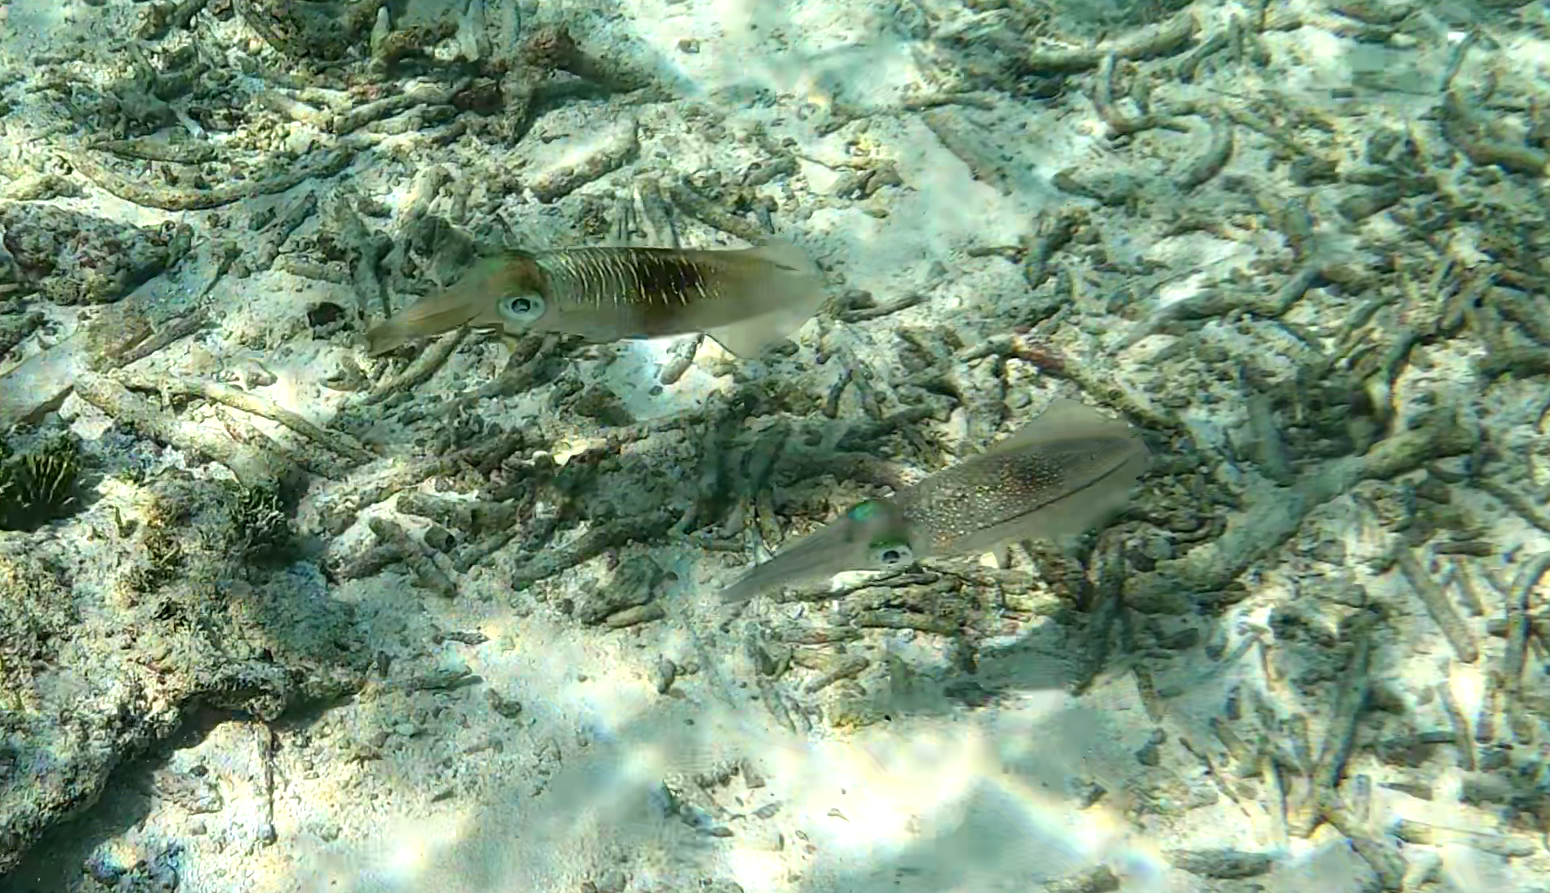 Bigfin reef Squid - Calamaro di Lesson - Sepioteuthis lessoniana - www.intotheblue.it